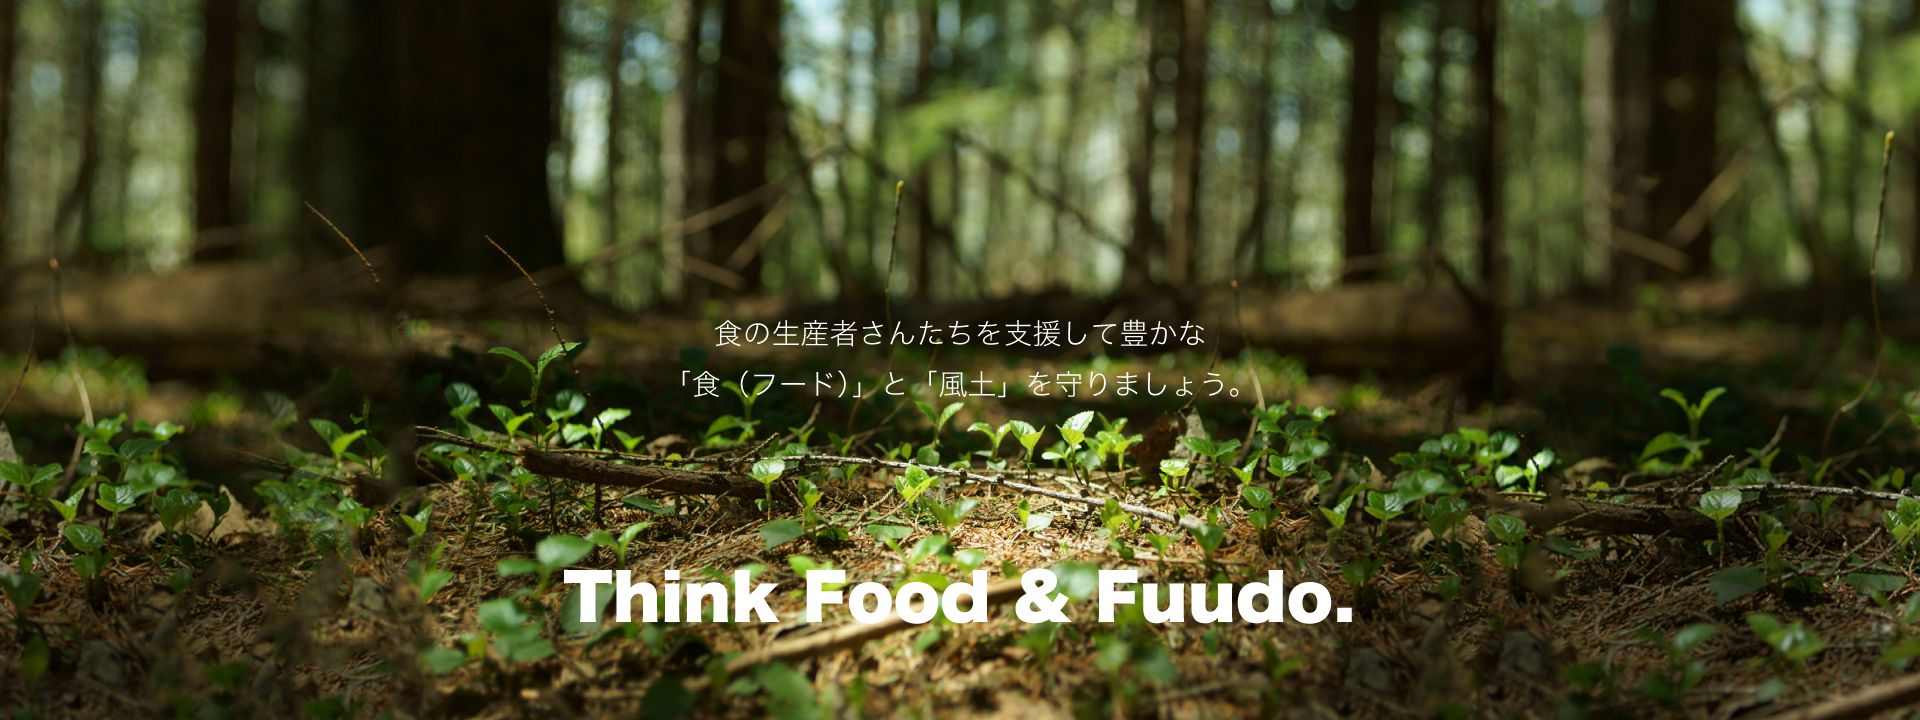 食の生産者さんたちを支援して豊かな「食(フード)」と「風土」を守りましょう。Think Food & Fuudo.